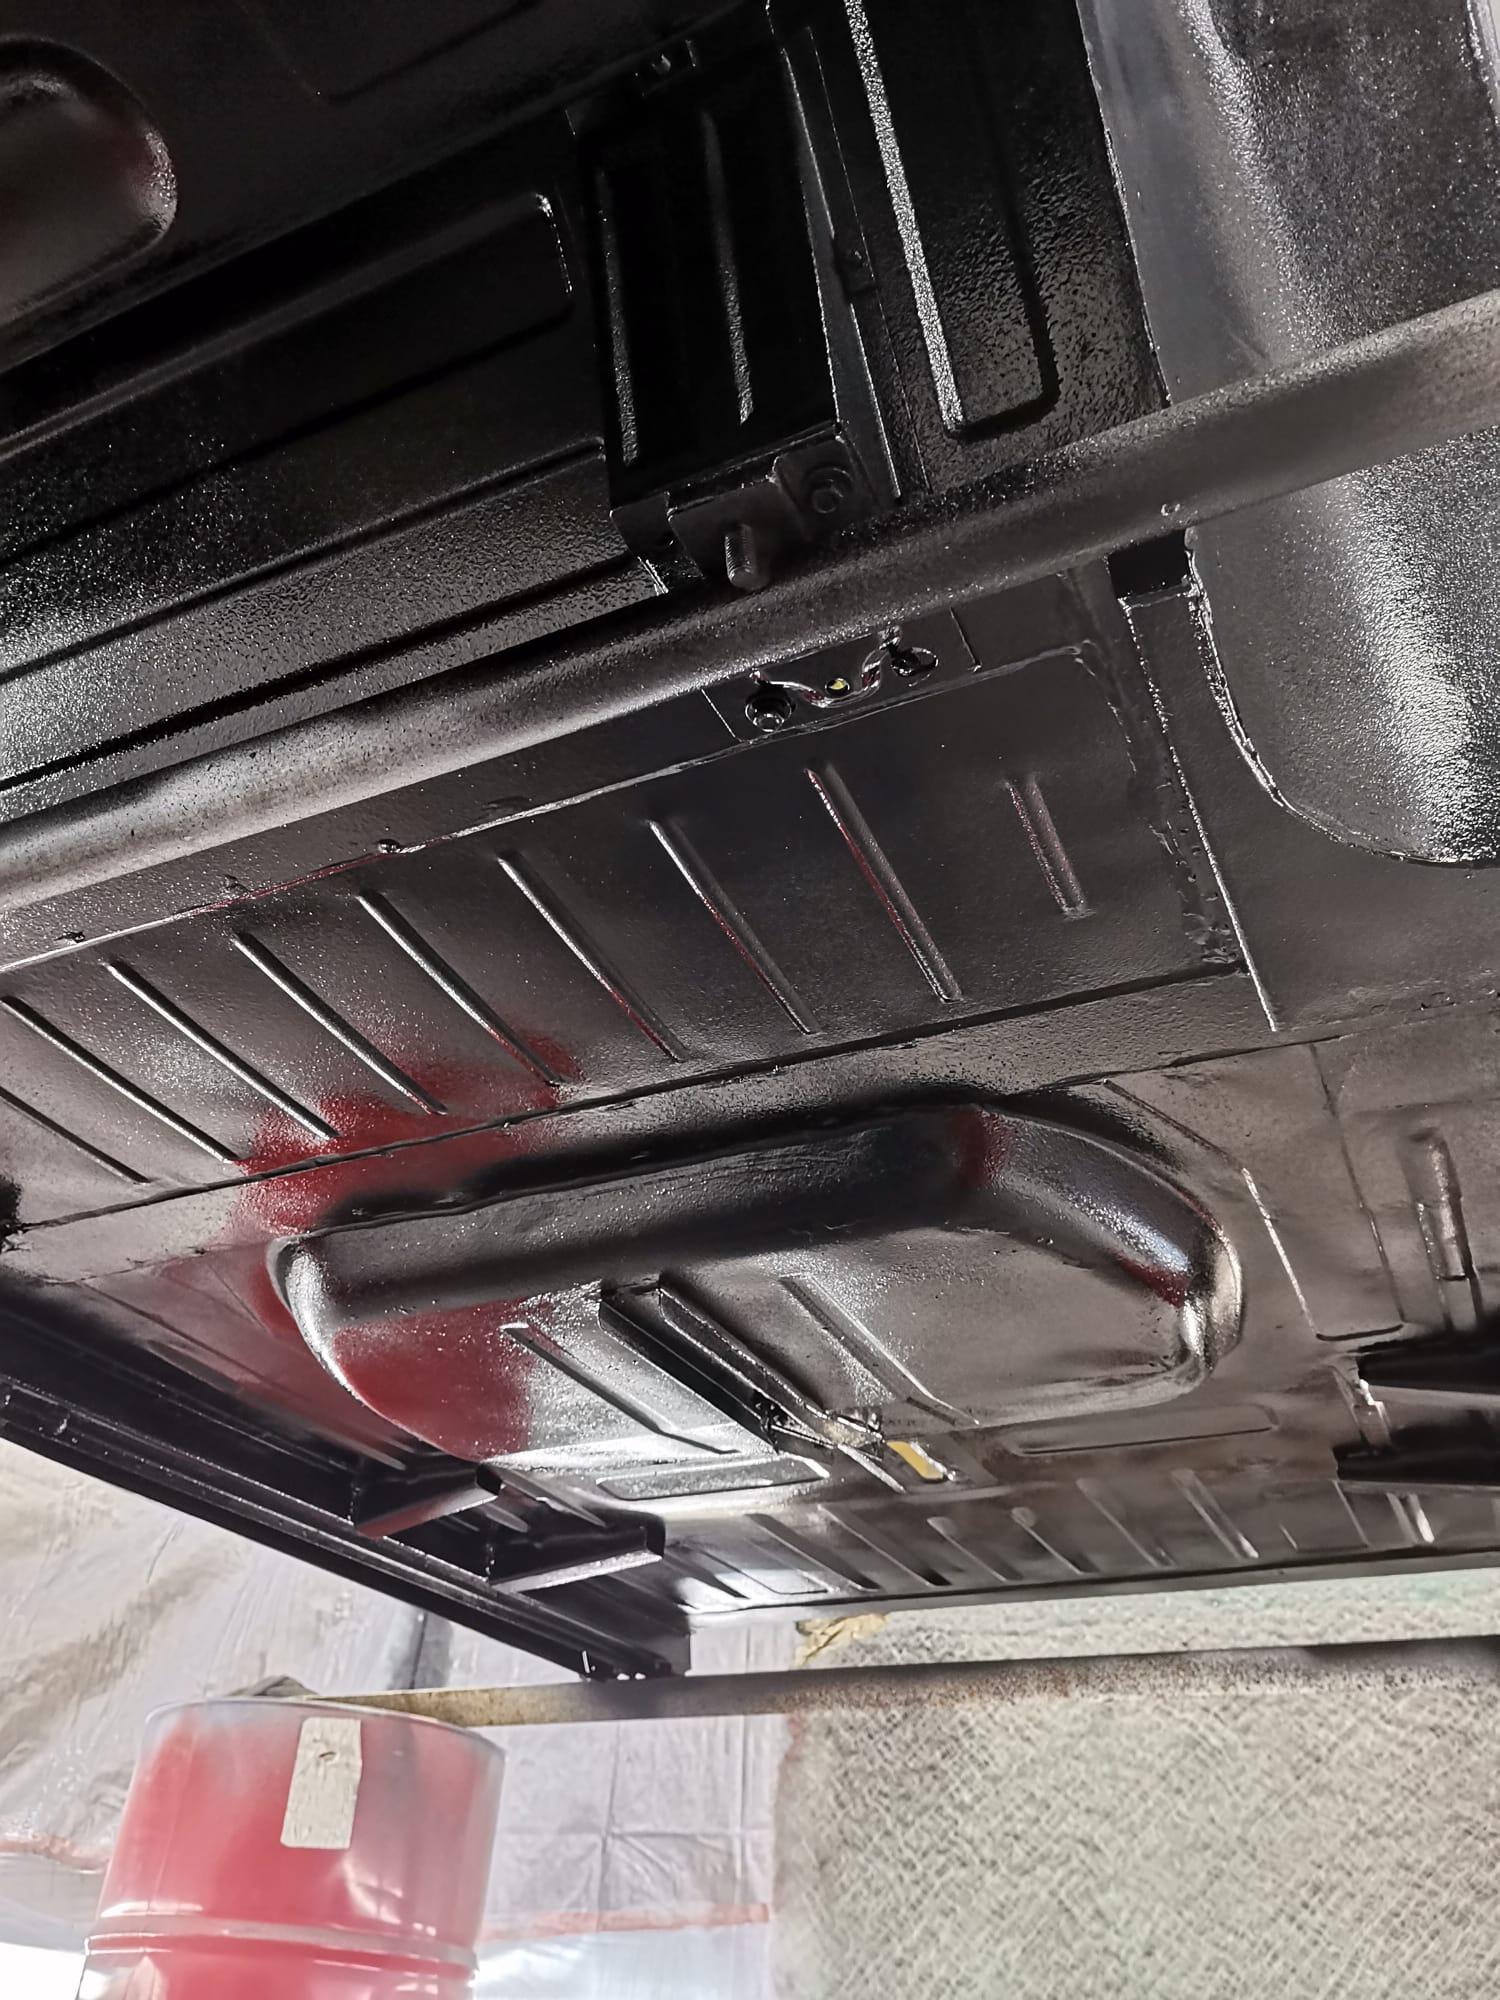 restauration restaurierung wartburg 311 cabrio lackierung